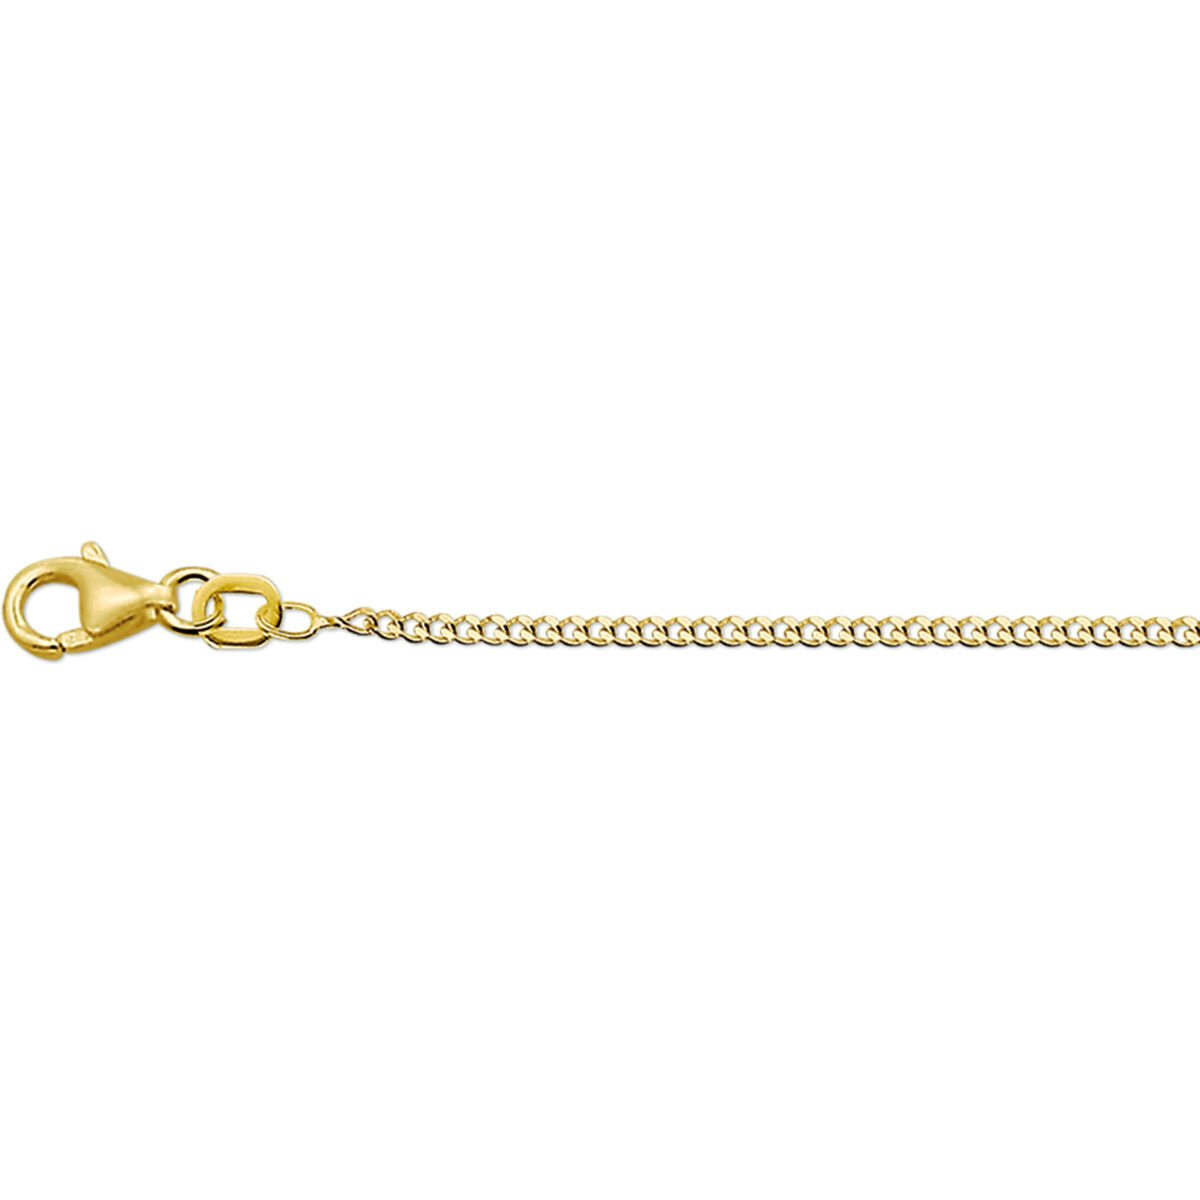 Geelgouden ketting - 14karaat – 45cm - Kasius 40.04596 - uitverkoop Juwelier Verlinden St. Hubert - van €329,- voor €269,-